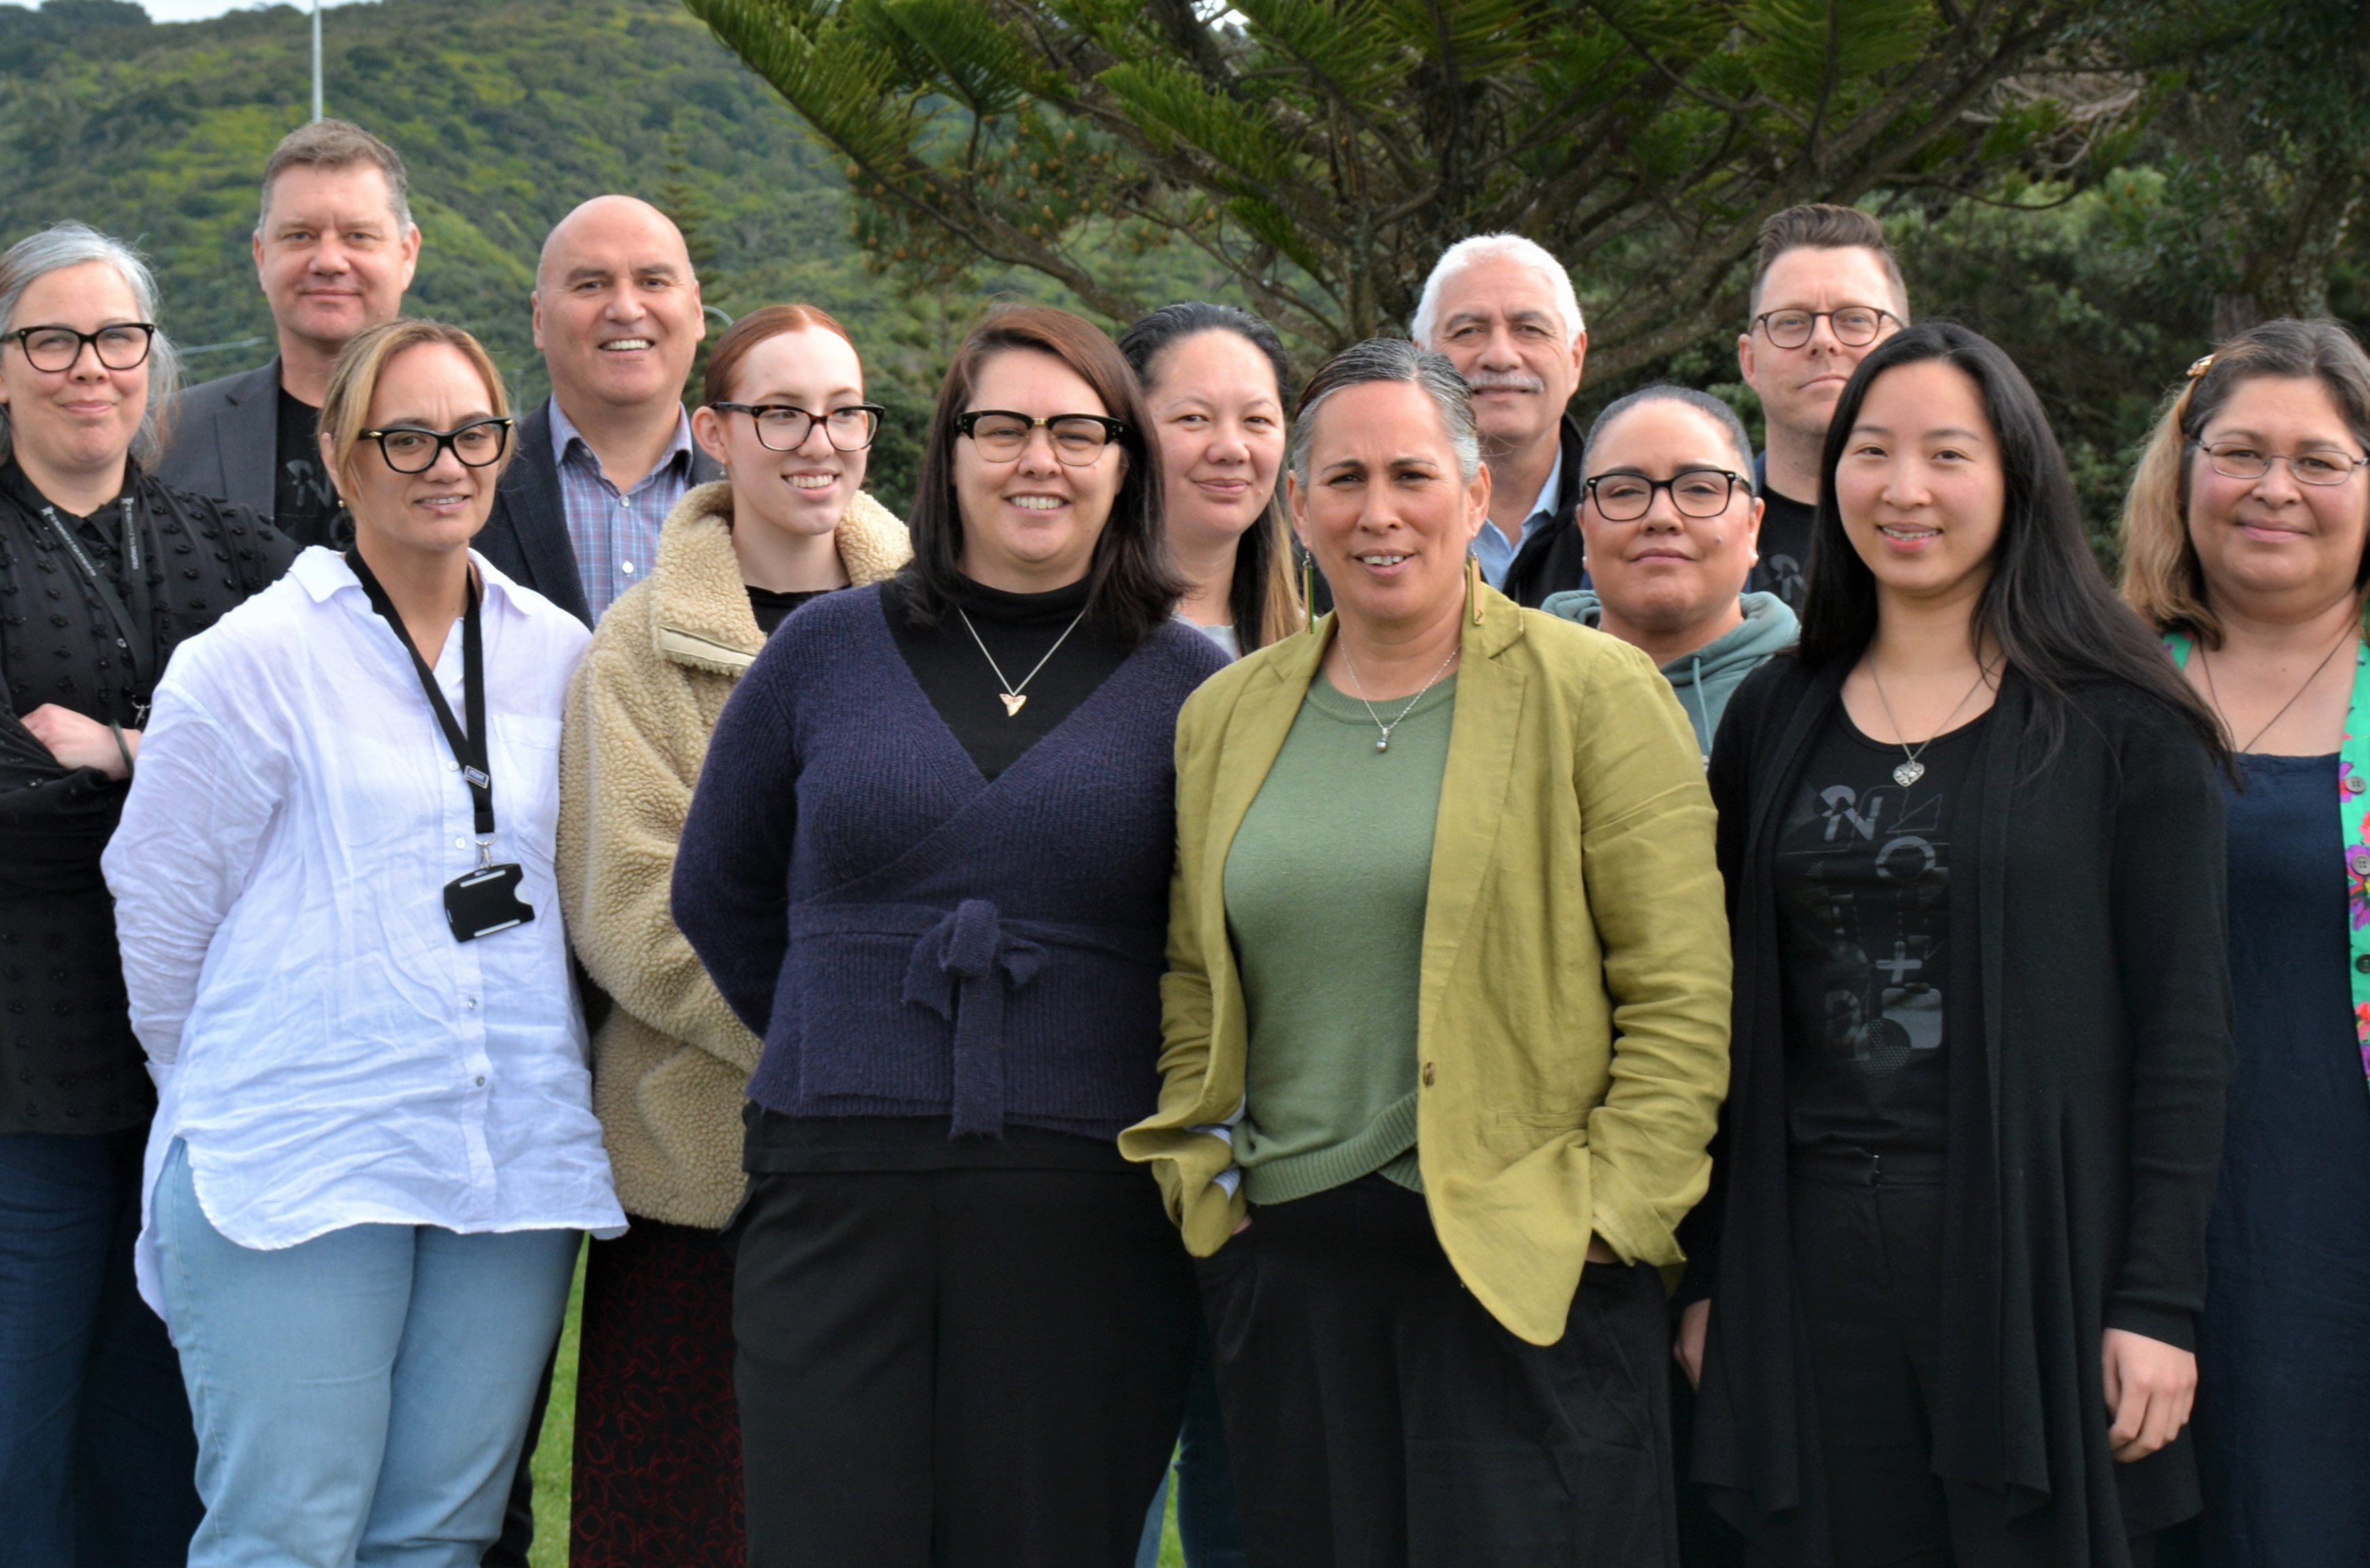 Te Rūnanga o Toa Rangatira chooses a new system to manage the care of their whānau